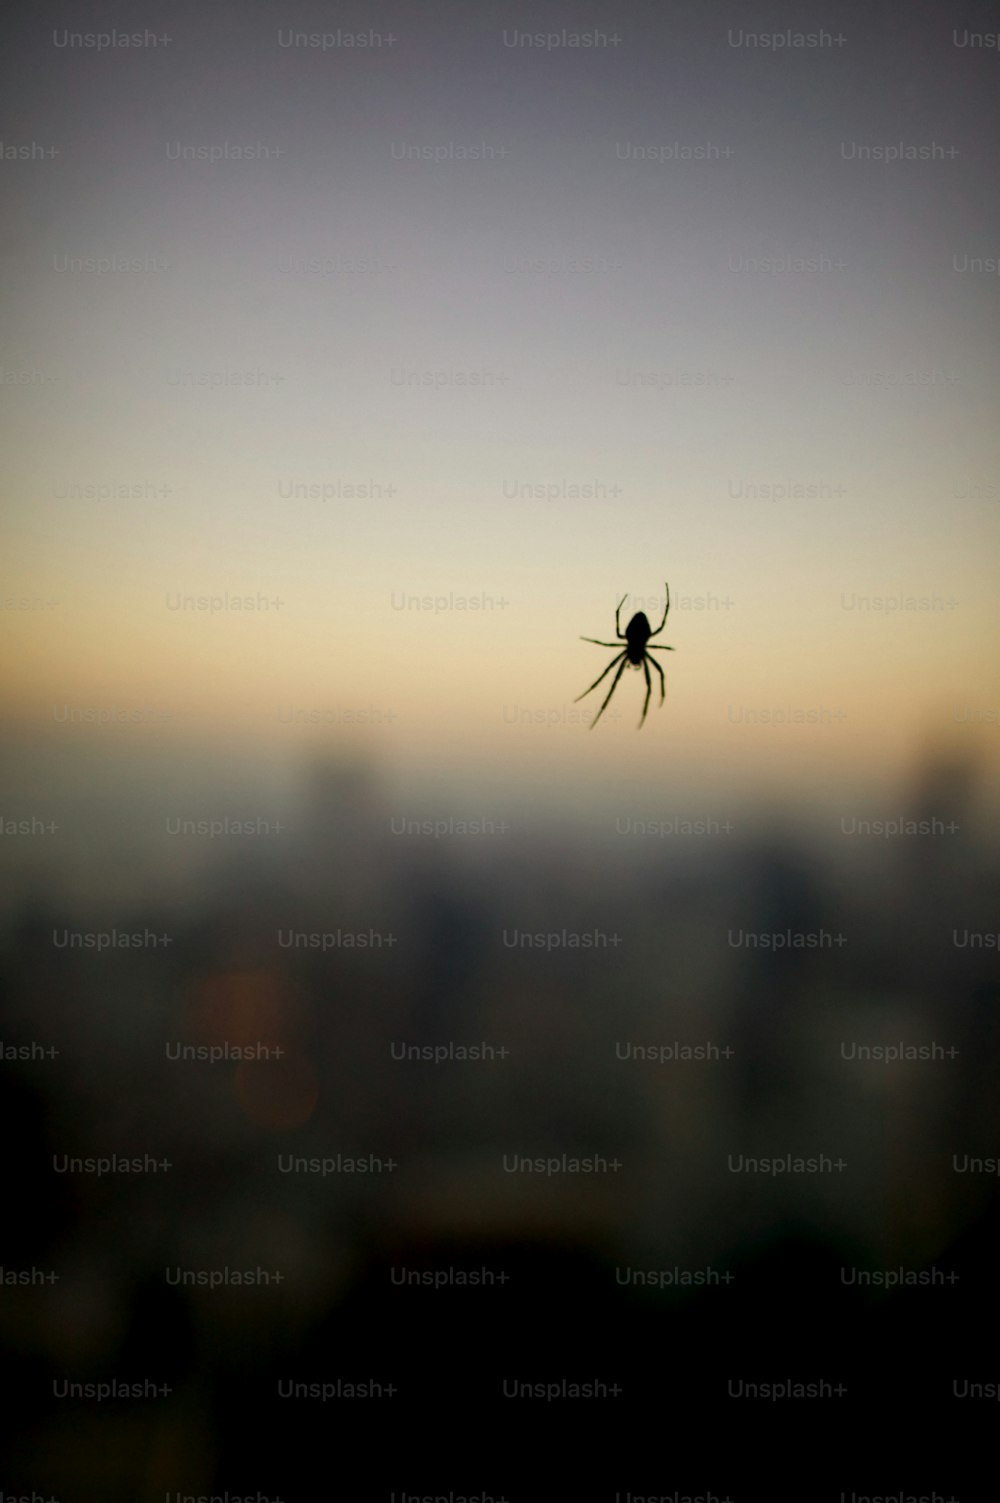 Eine Spinne, die mitten in einer Stadt auf ihrem Netz sitzt